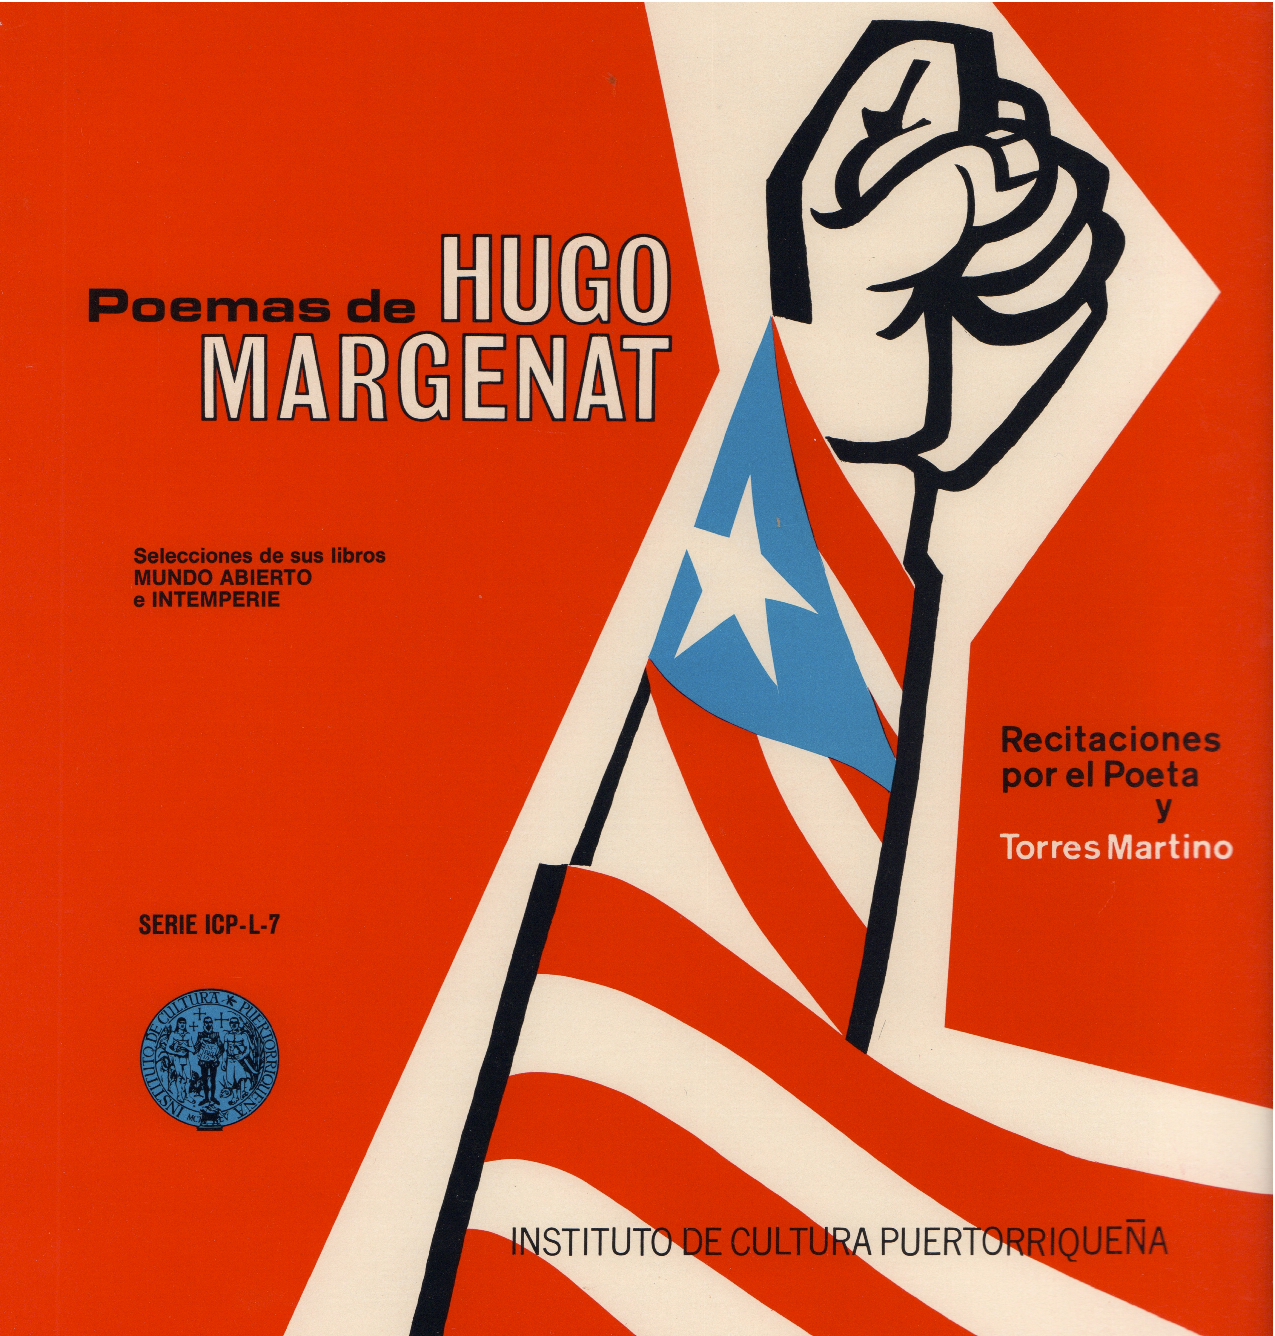 Poemas de Hugo Margenat (Selección de sus libros Mundo Abierto e Intemperie)